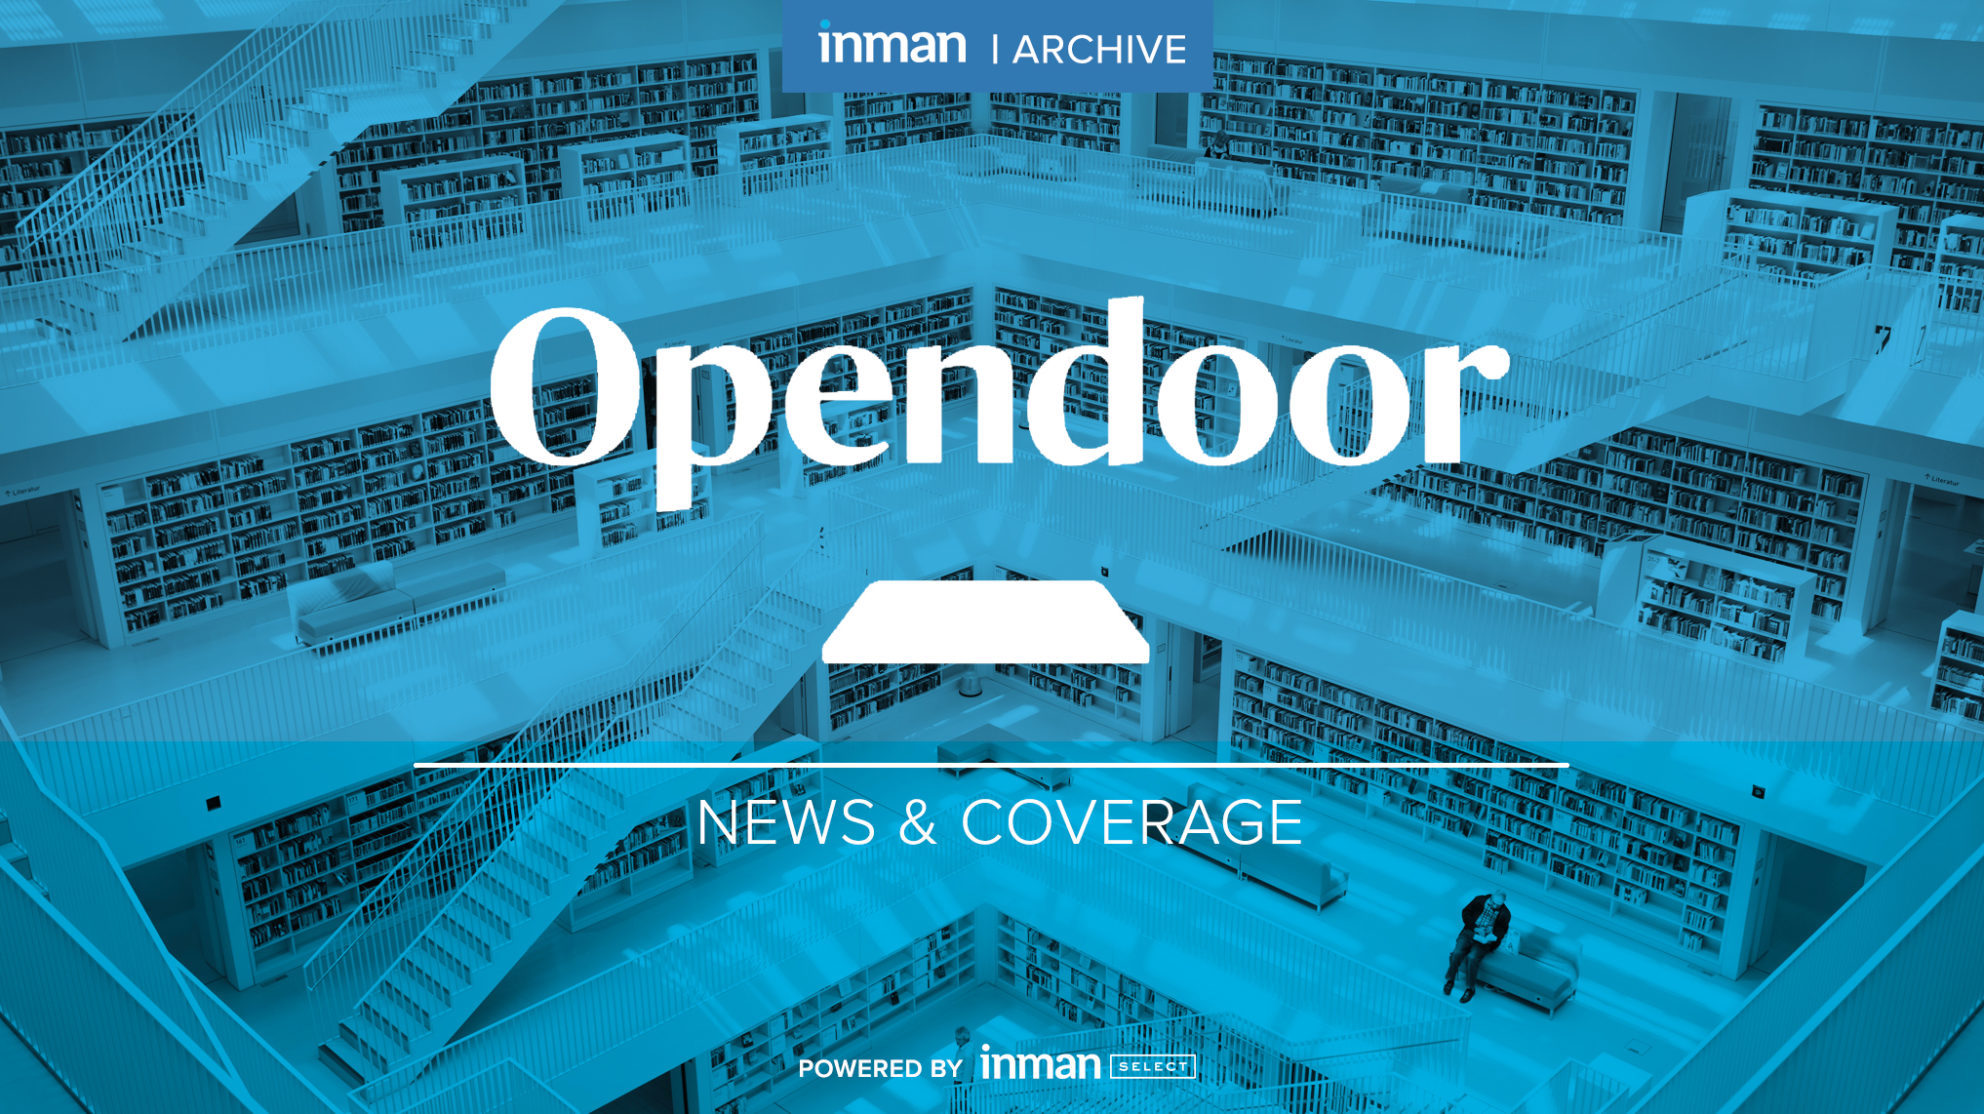 Inman Archive: Opendoor